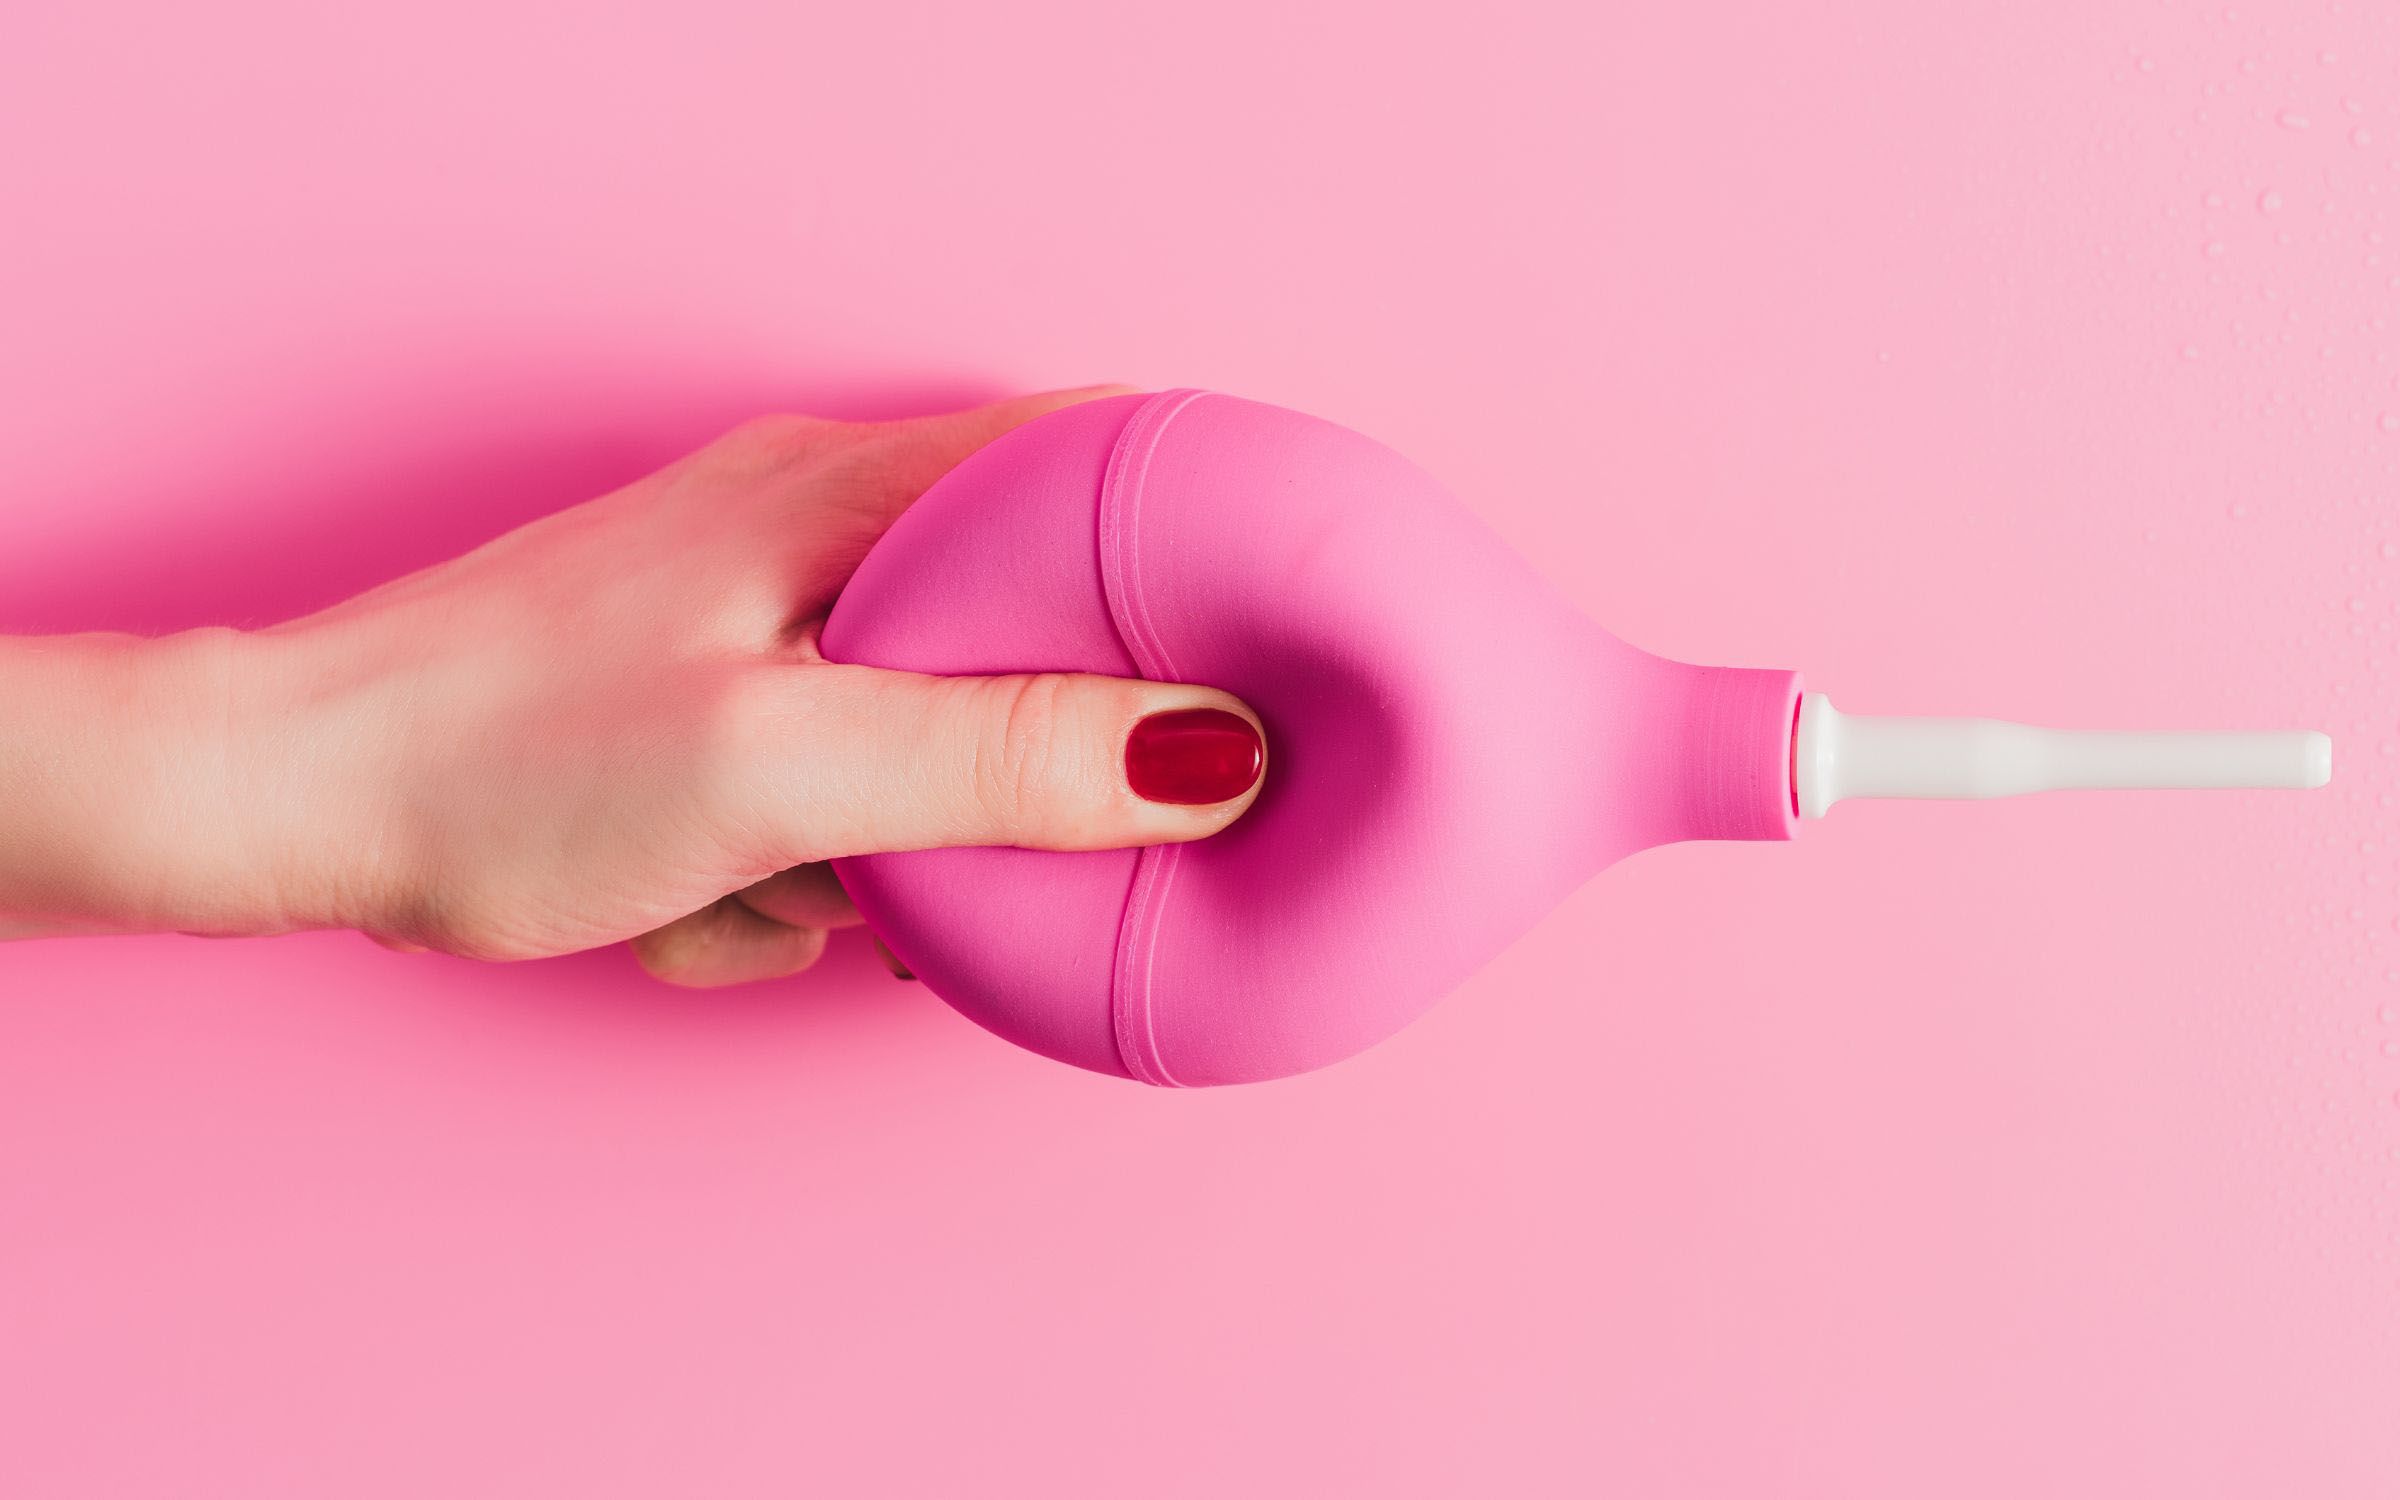 El mito del lavado vaginal con vinagre